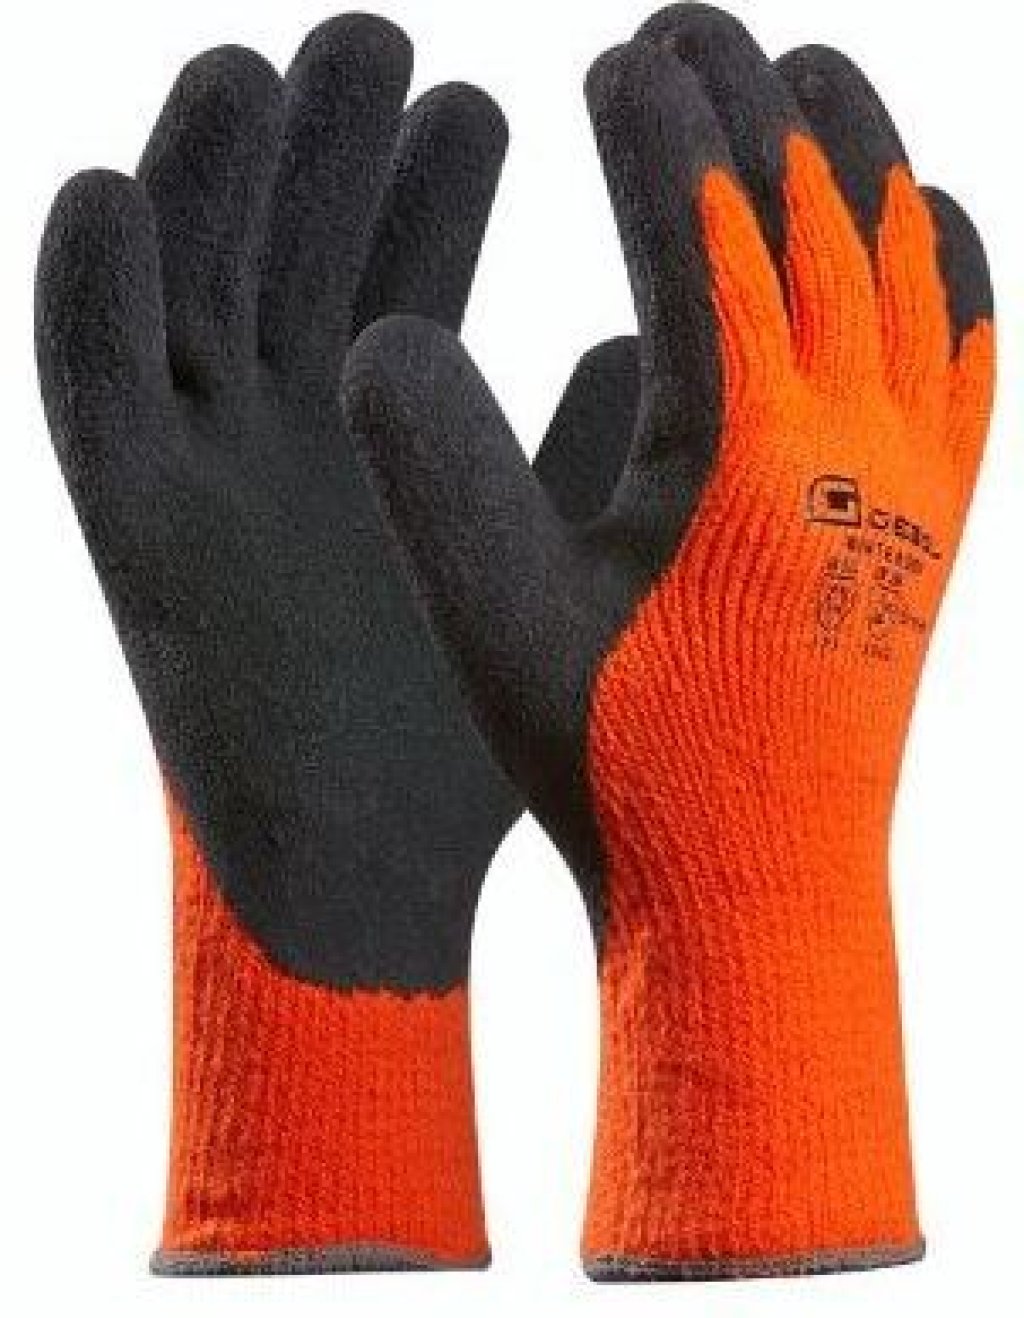 Gebol Winter Grip work gloves